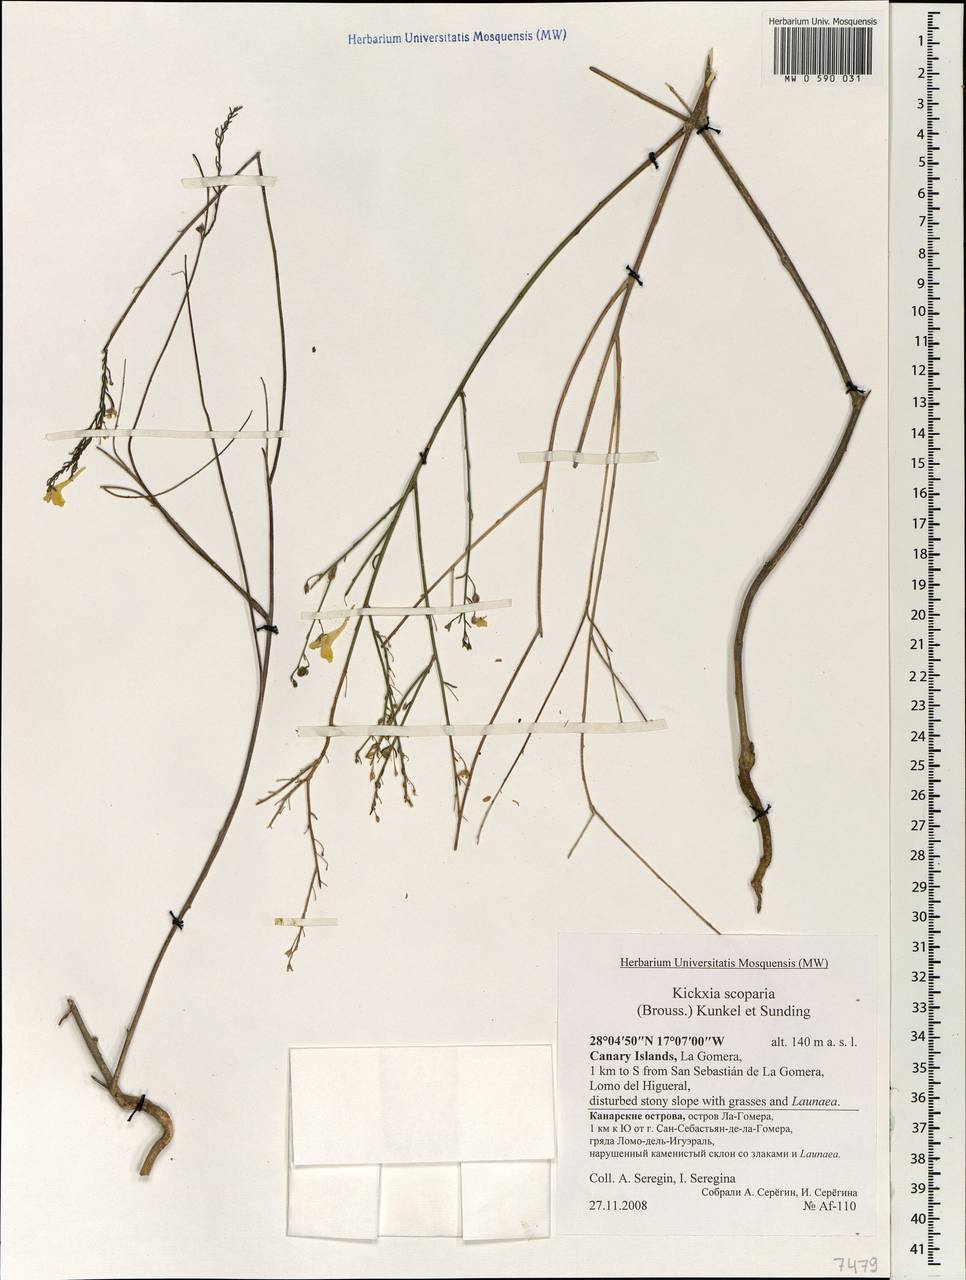 Nanorrhinum scoparium (Brouss. ex Spreng.) Yousefi & Zarre, Africa (AFR) (Spain)